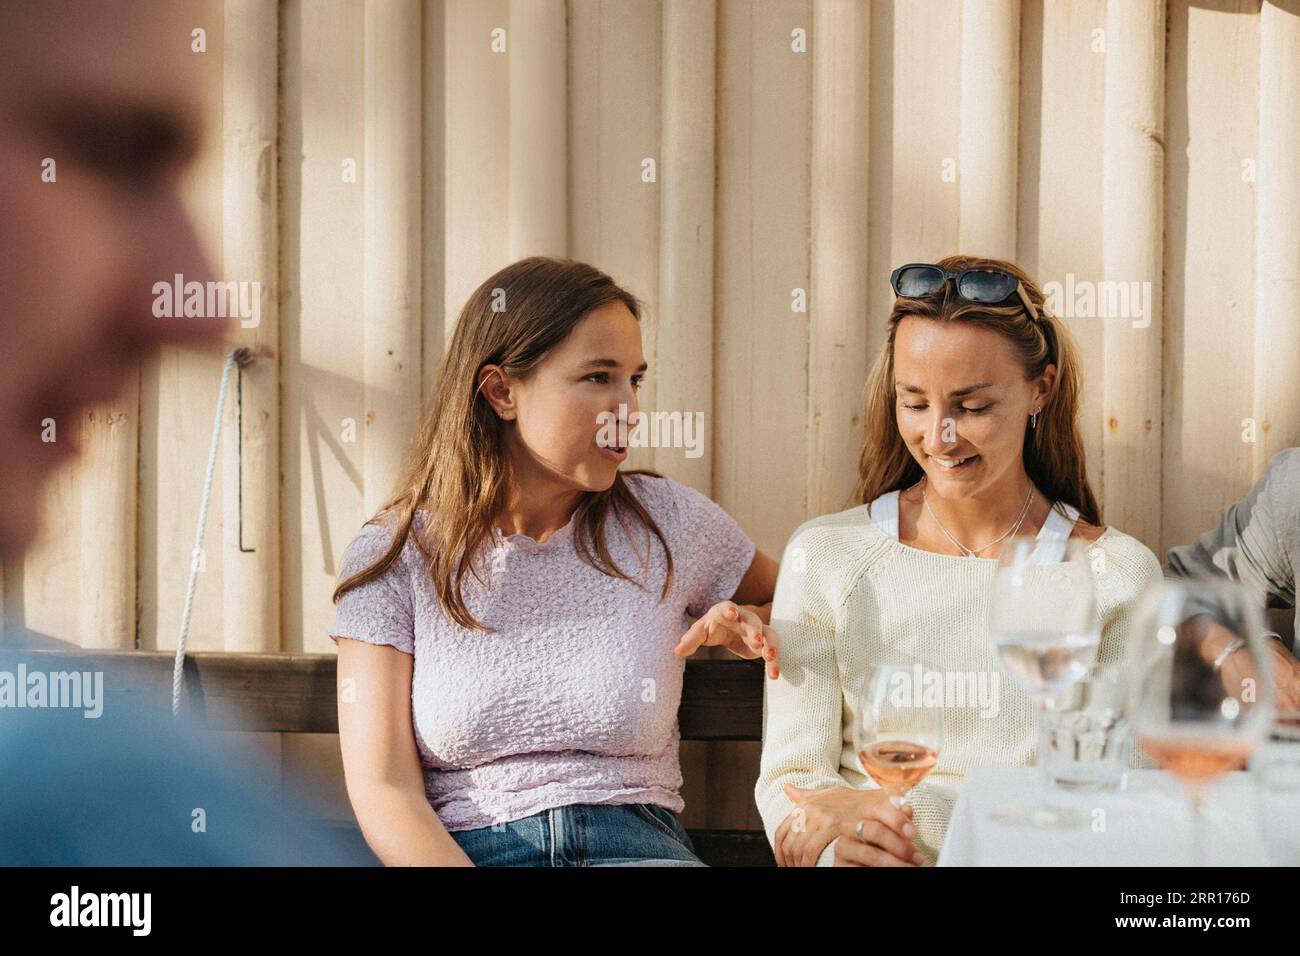 Junge Frau, die mit einer Freundin während einer Dinnerparty im Café spricht Stockfoto